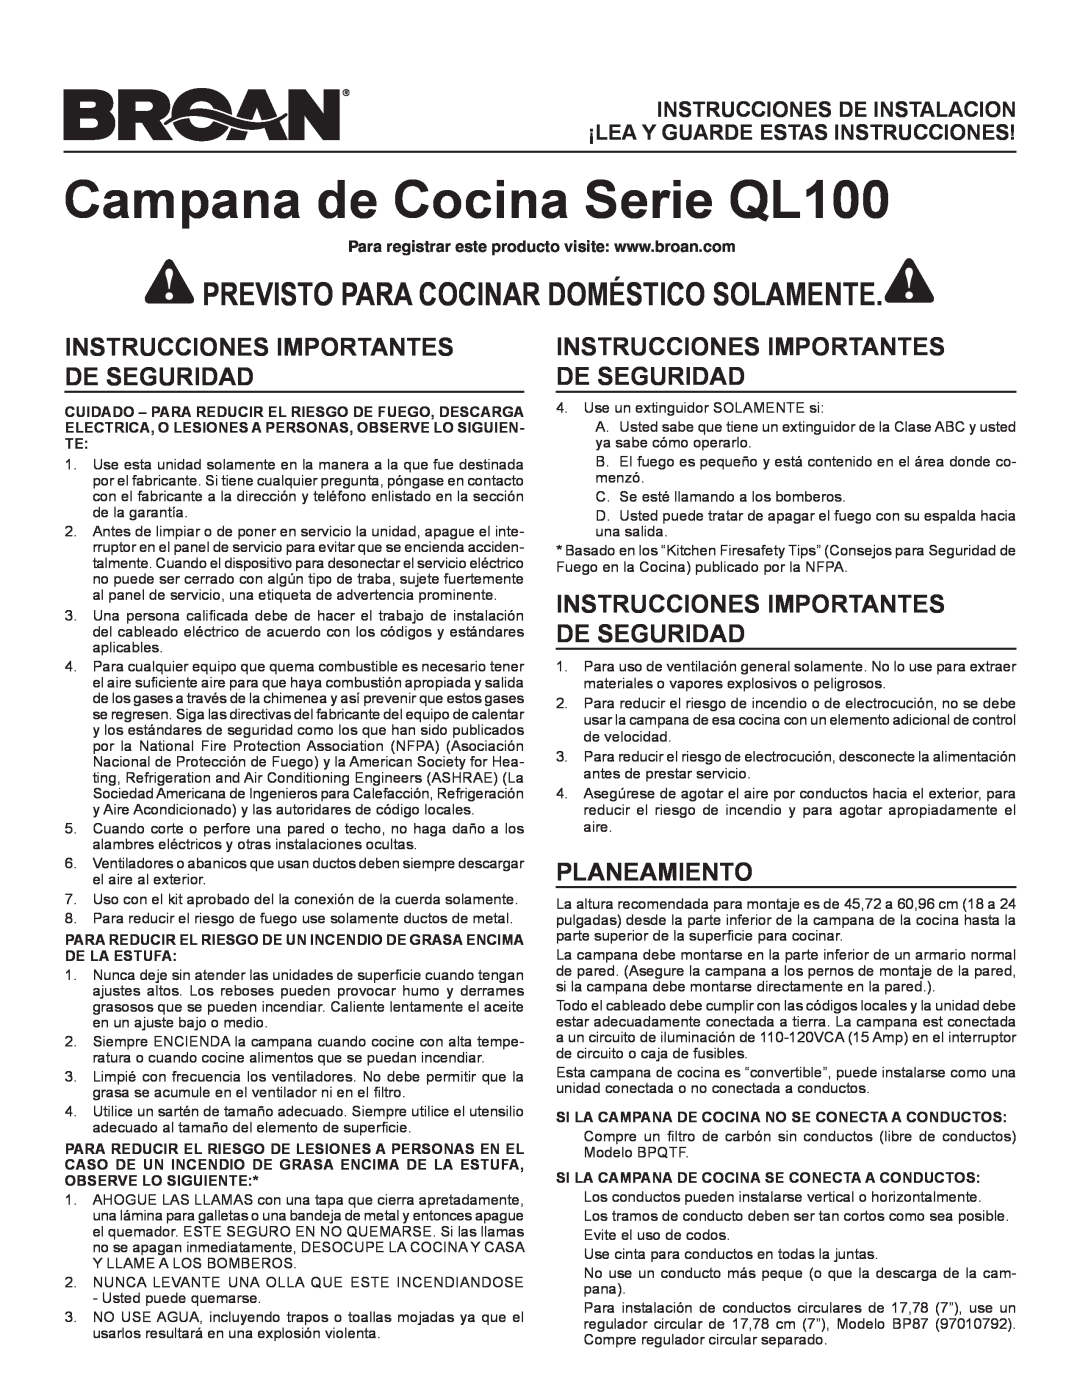 Broan Ql100 Series Instrucciones Importantes De Seguridad, Planeamiento, Campana de Cocina Serie QL100 